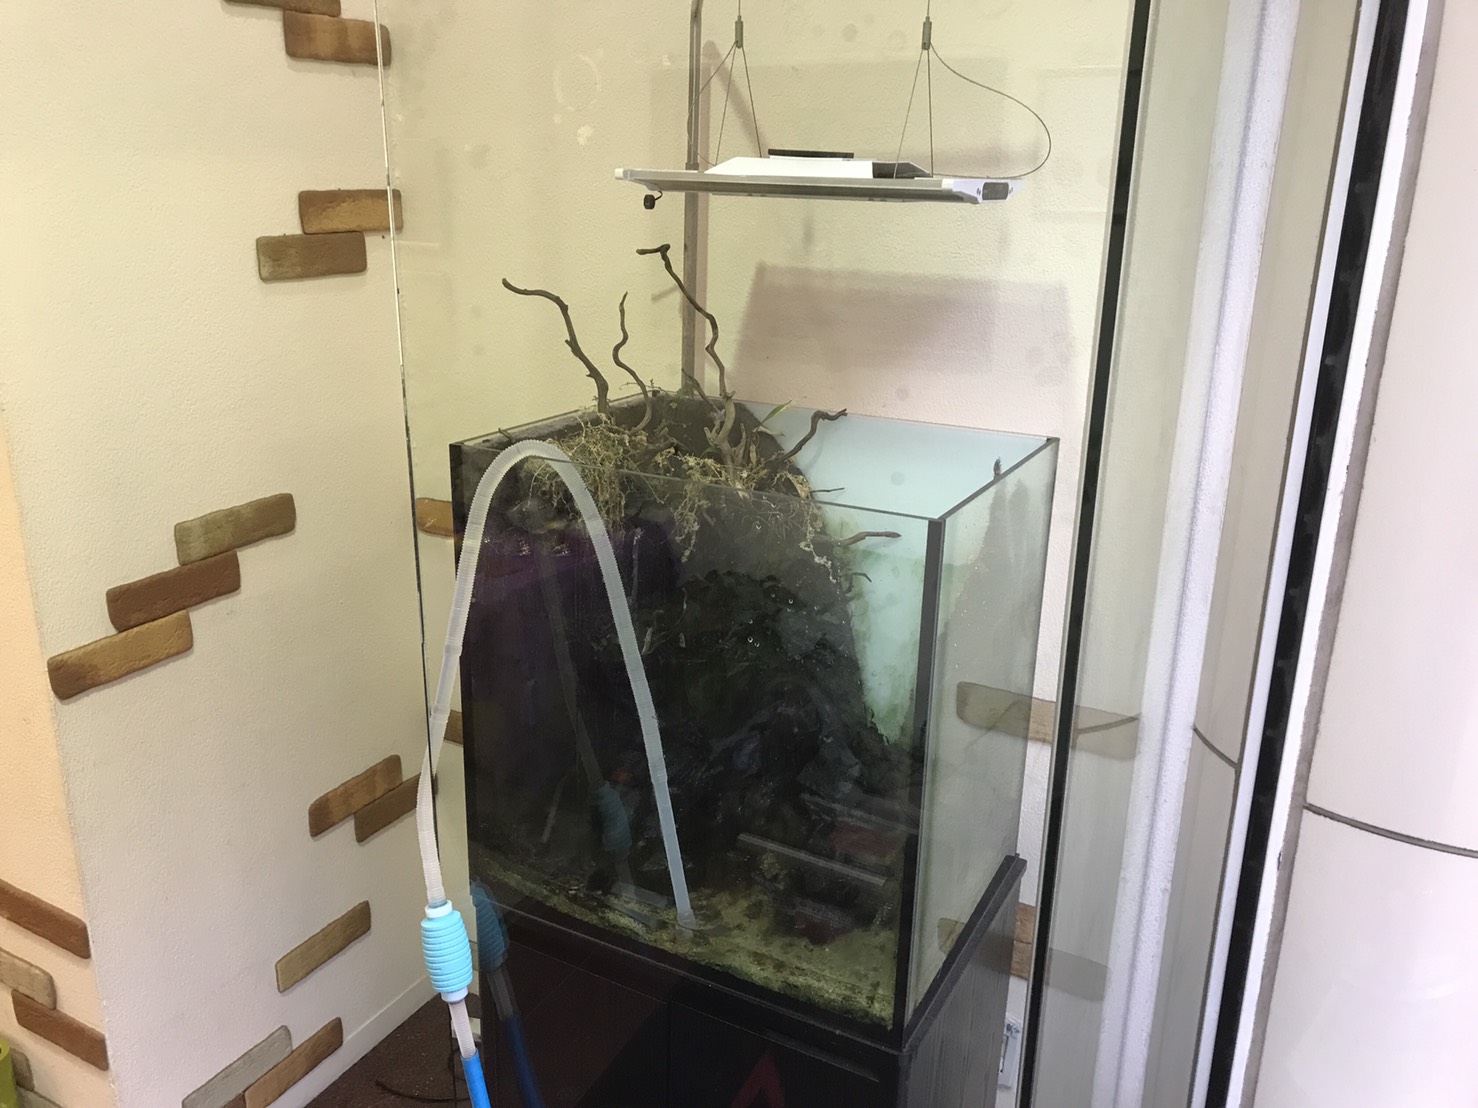 Aquarium Tall Man 関西 大阪 で最も完成した水草レイアウト水槽作品を選んで購入出来るアクアリウムショップです